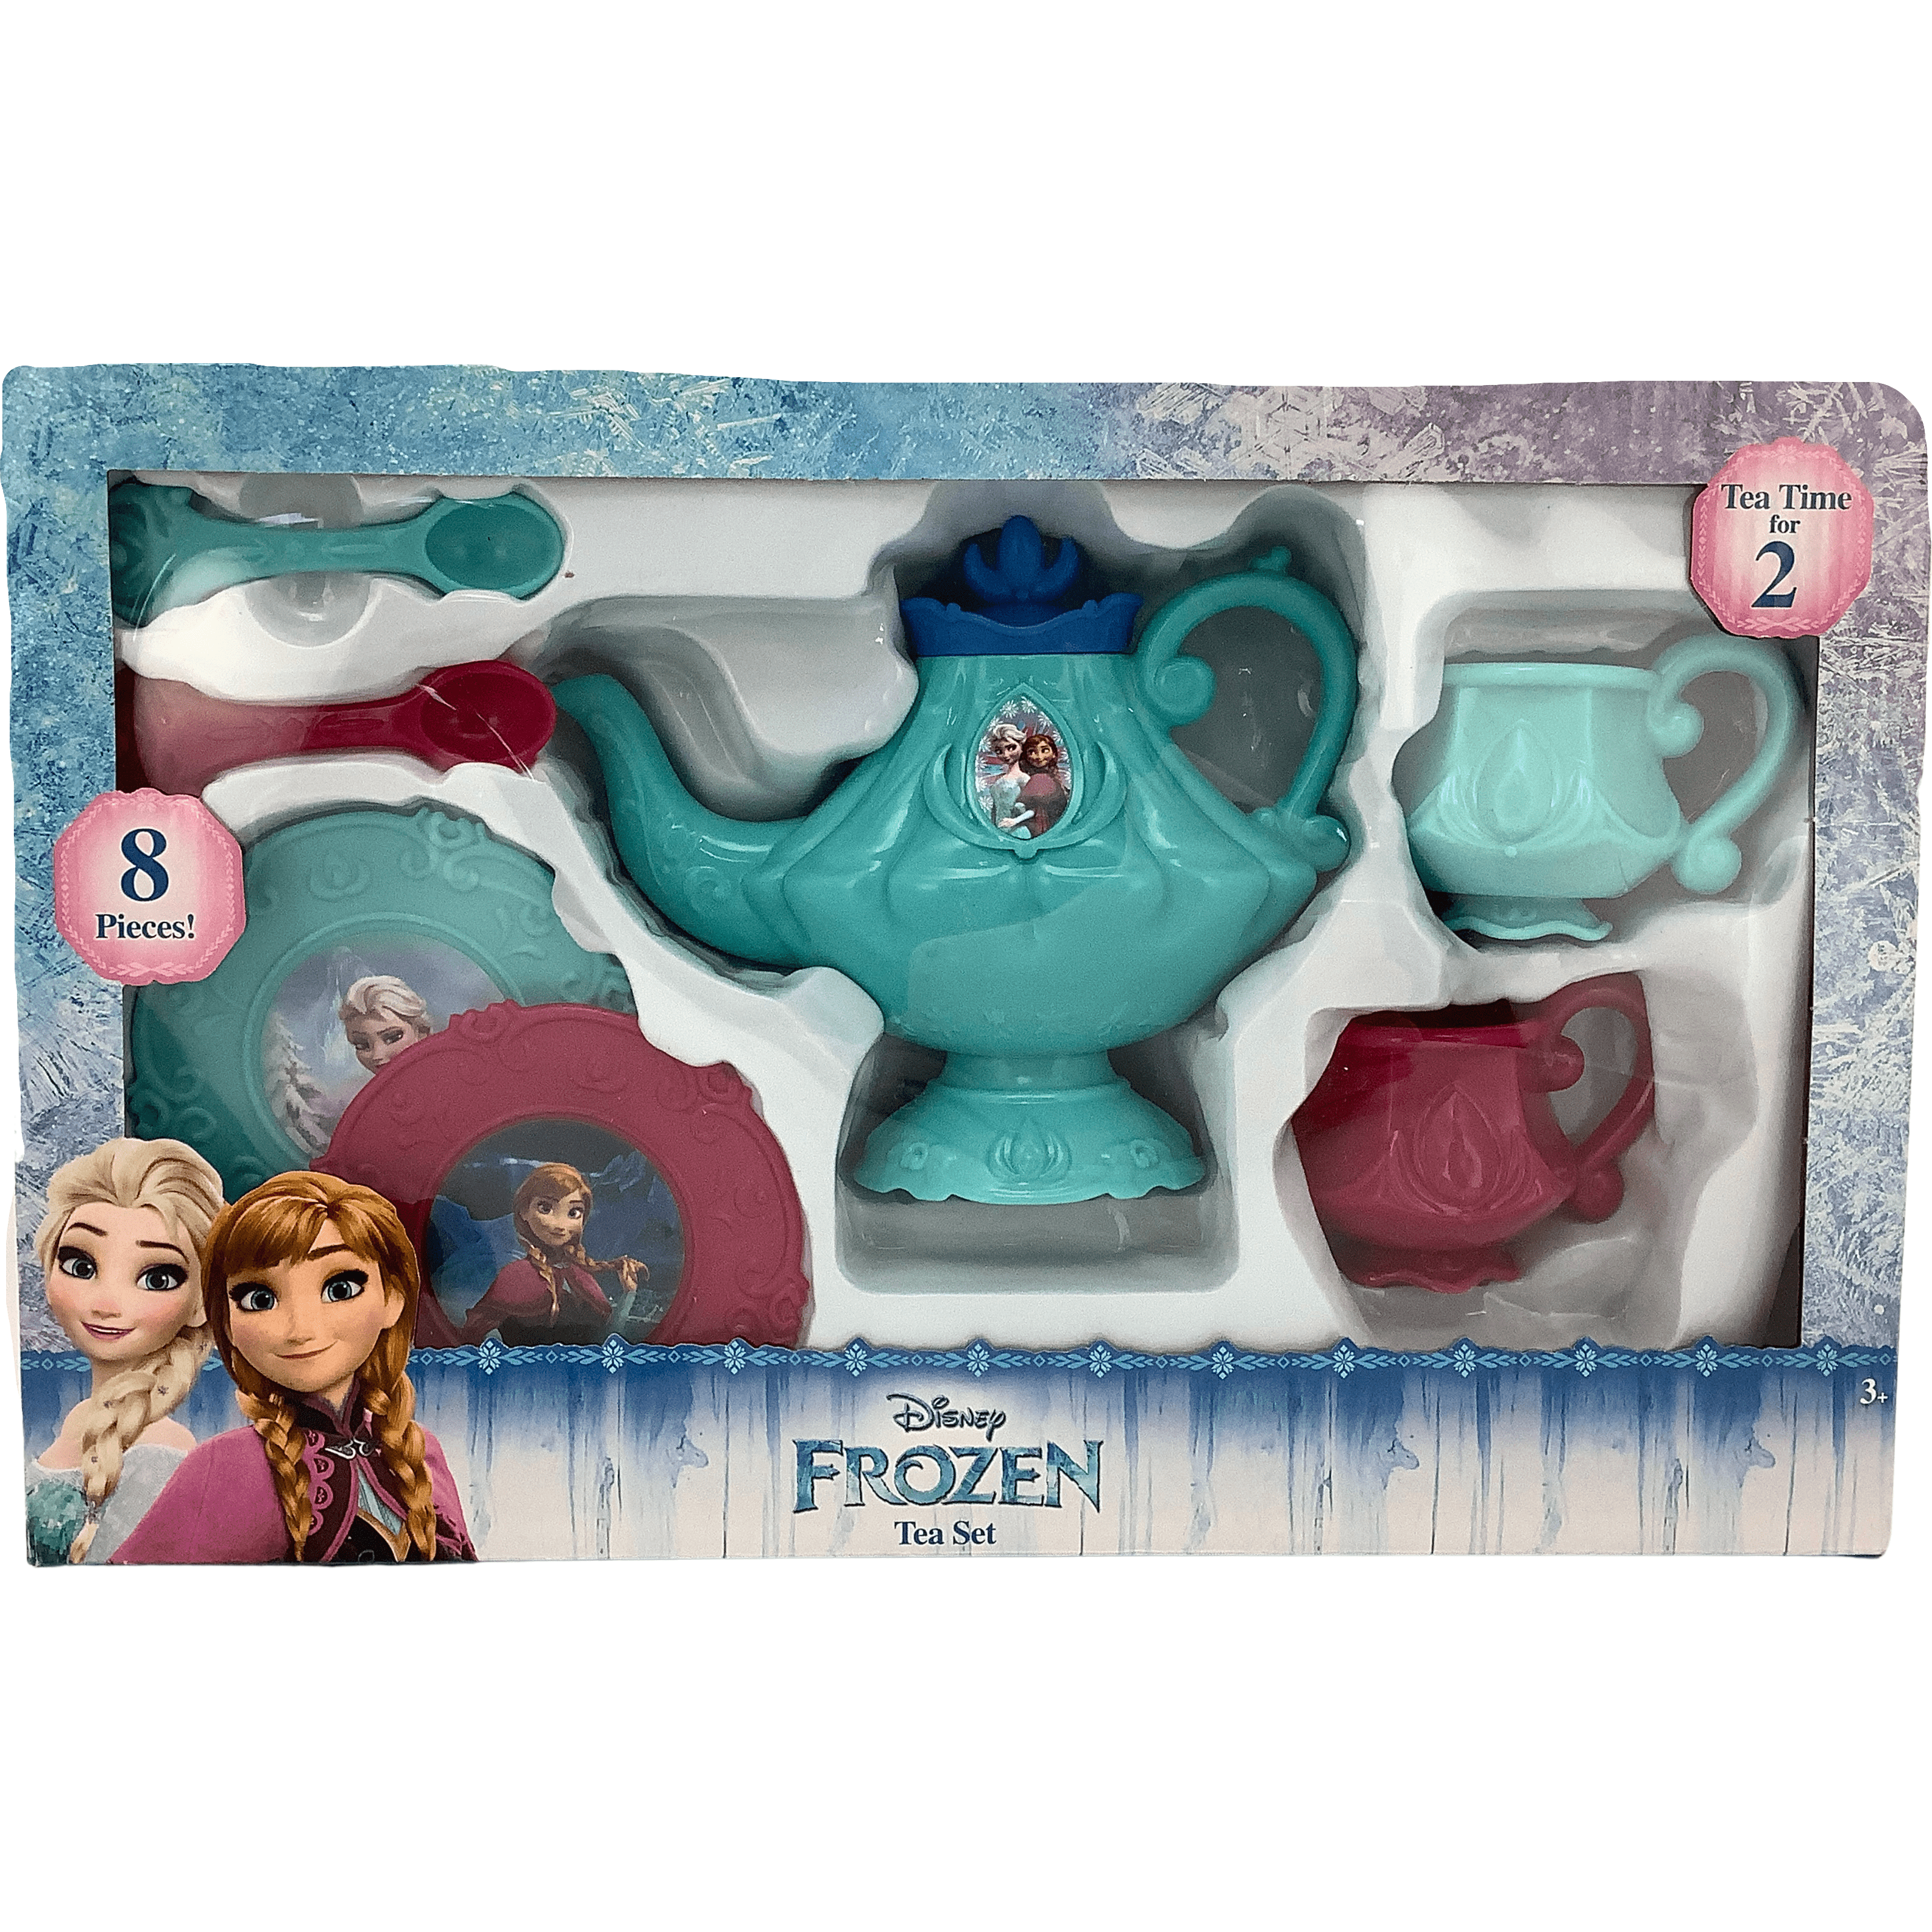 Disney Frozen Tea Set / 8 Piece Set / Tea Party Bundle / Anna and Elsa **DEALS**